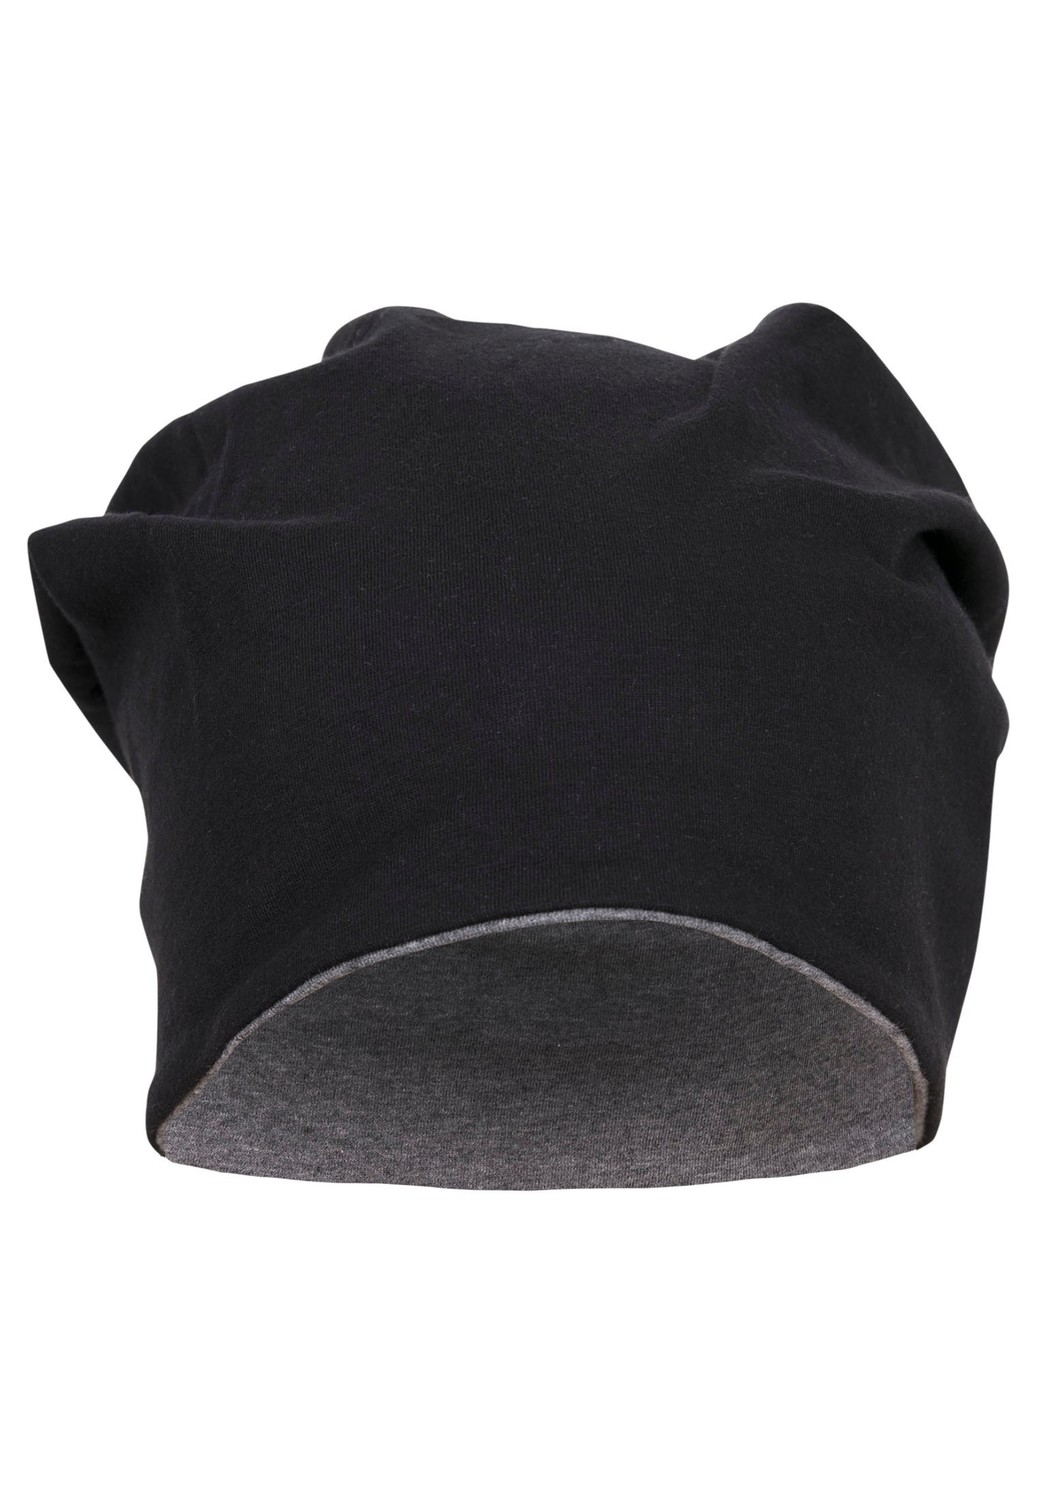 Jersey čepice oboustranná blk/ht.Dřevěné uhlí